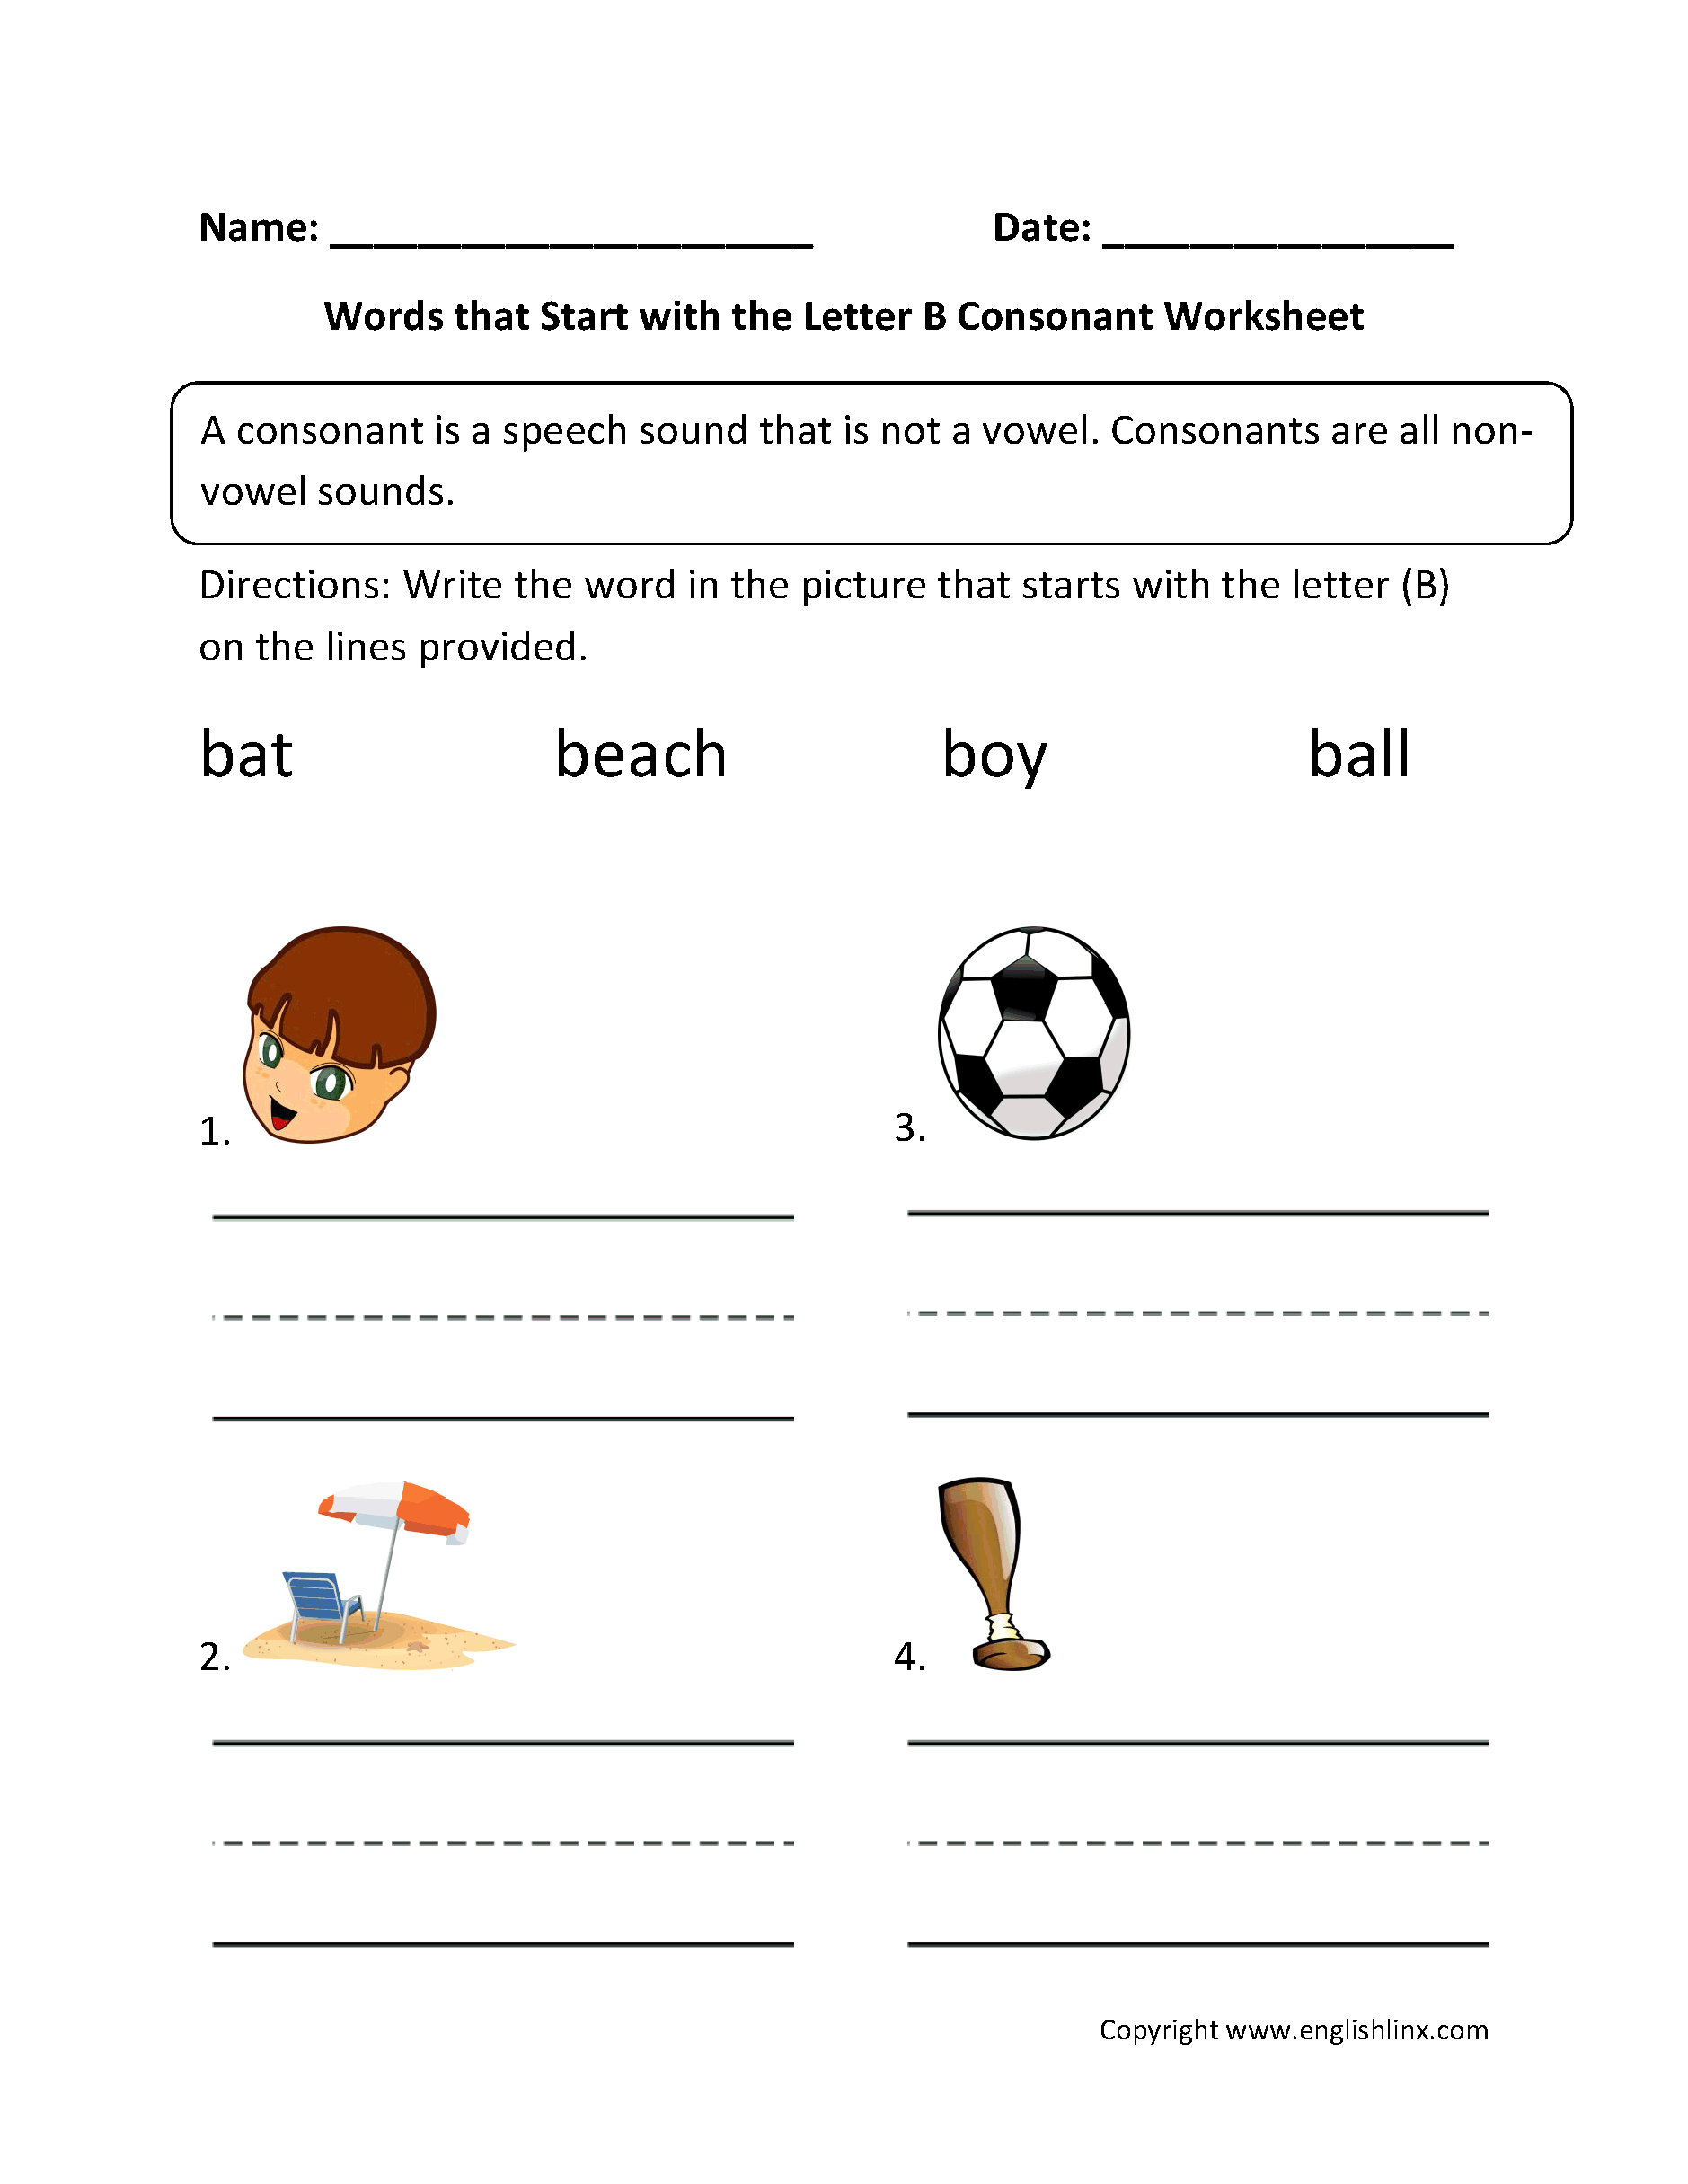 Words Start Letter B Consonant Worksheets